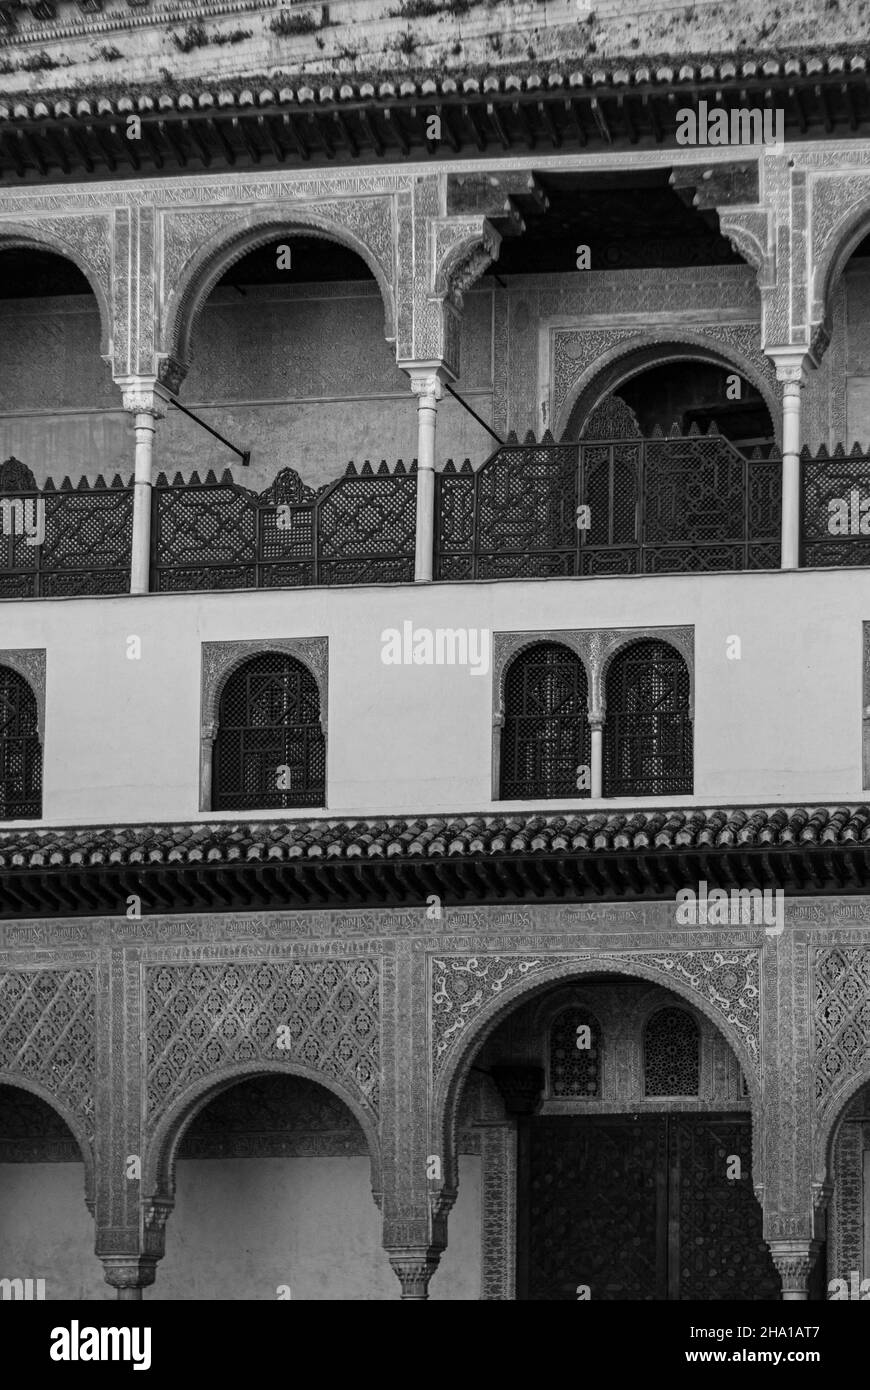 Foto in scala di grigi dei dettagli architettonici della vista esterna del palazzo dell'Alhambra a Granada, Spagna Foto Stock